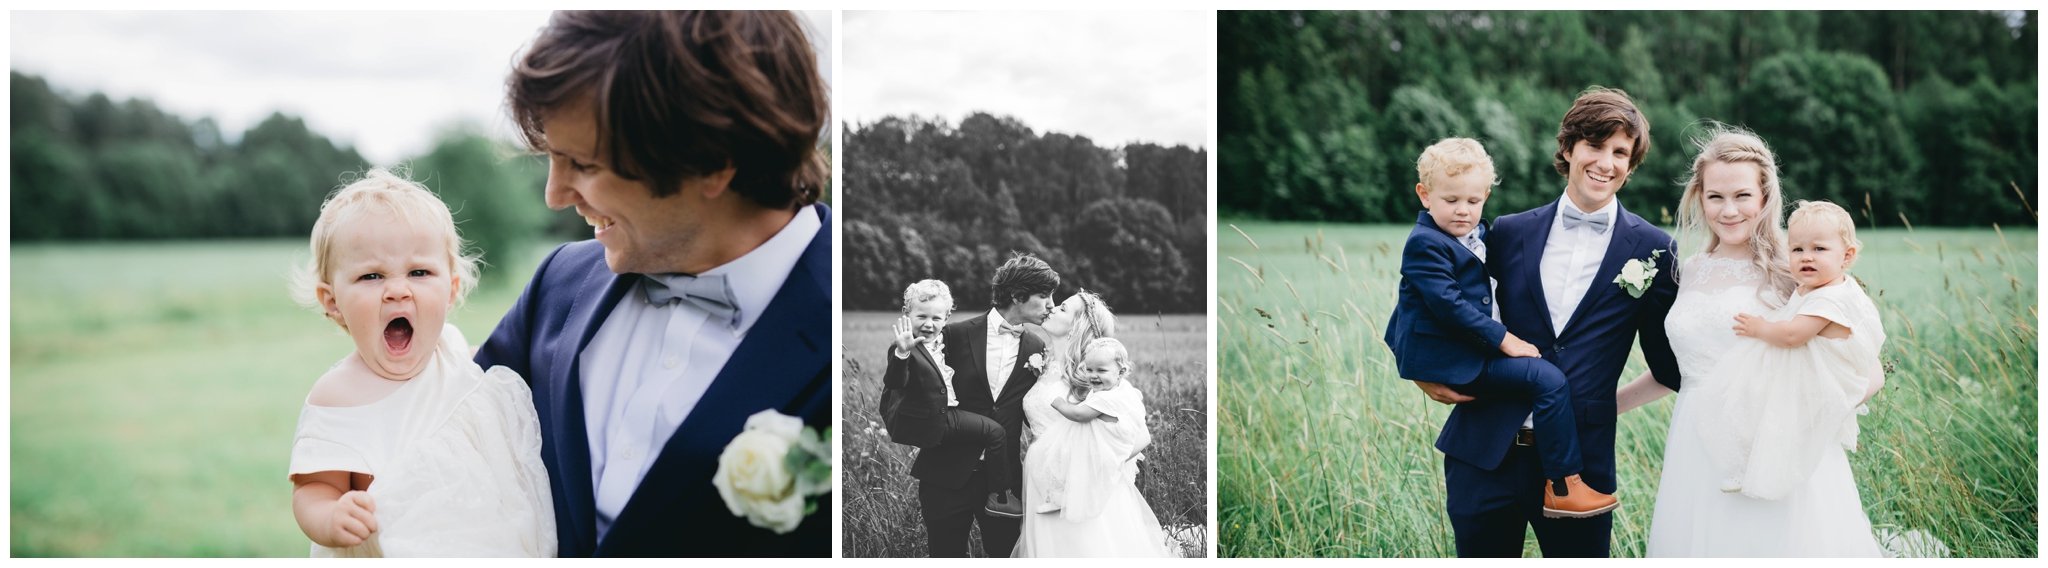 lop i täby, bröllop i vaxholm, bröllop i Vallentuna, fotograf bröllop, bröllopsfotograf norrtälje